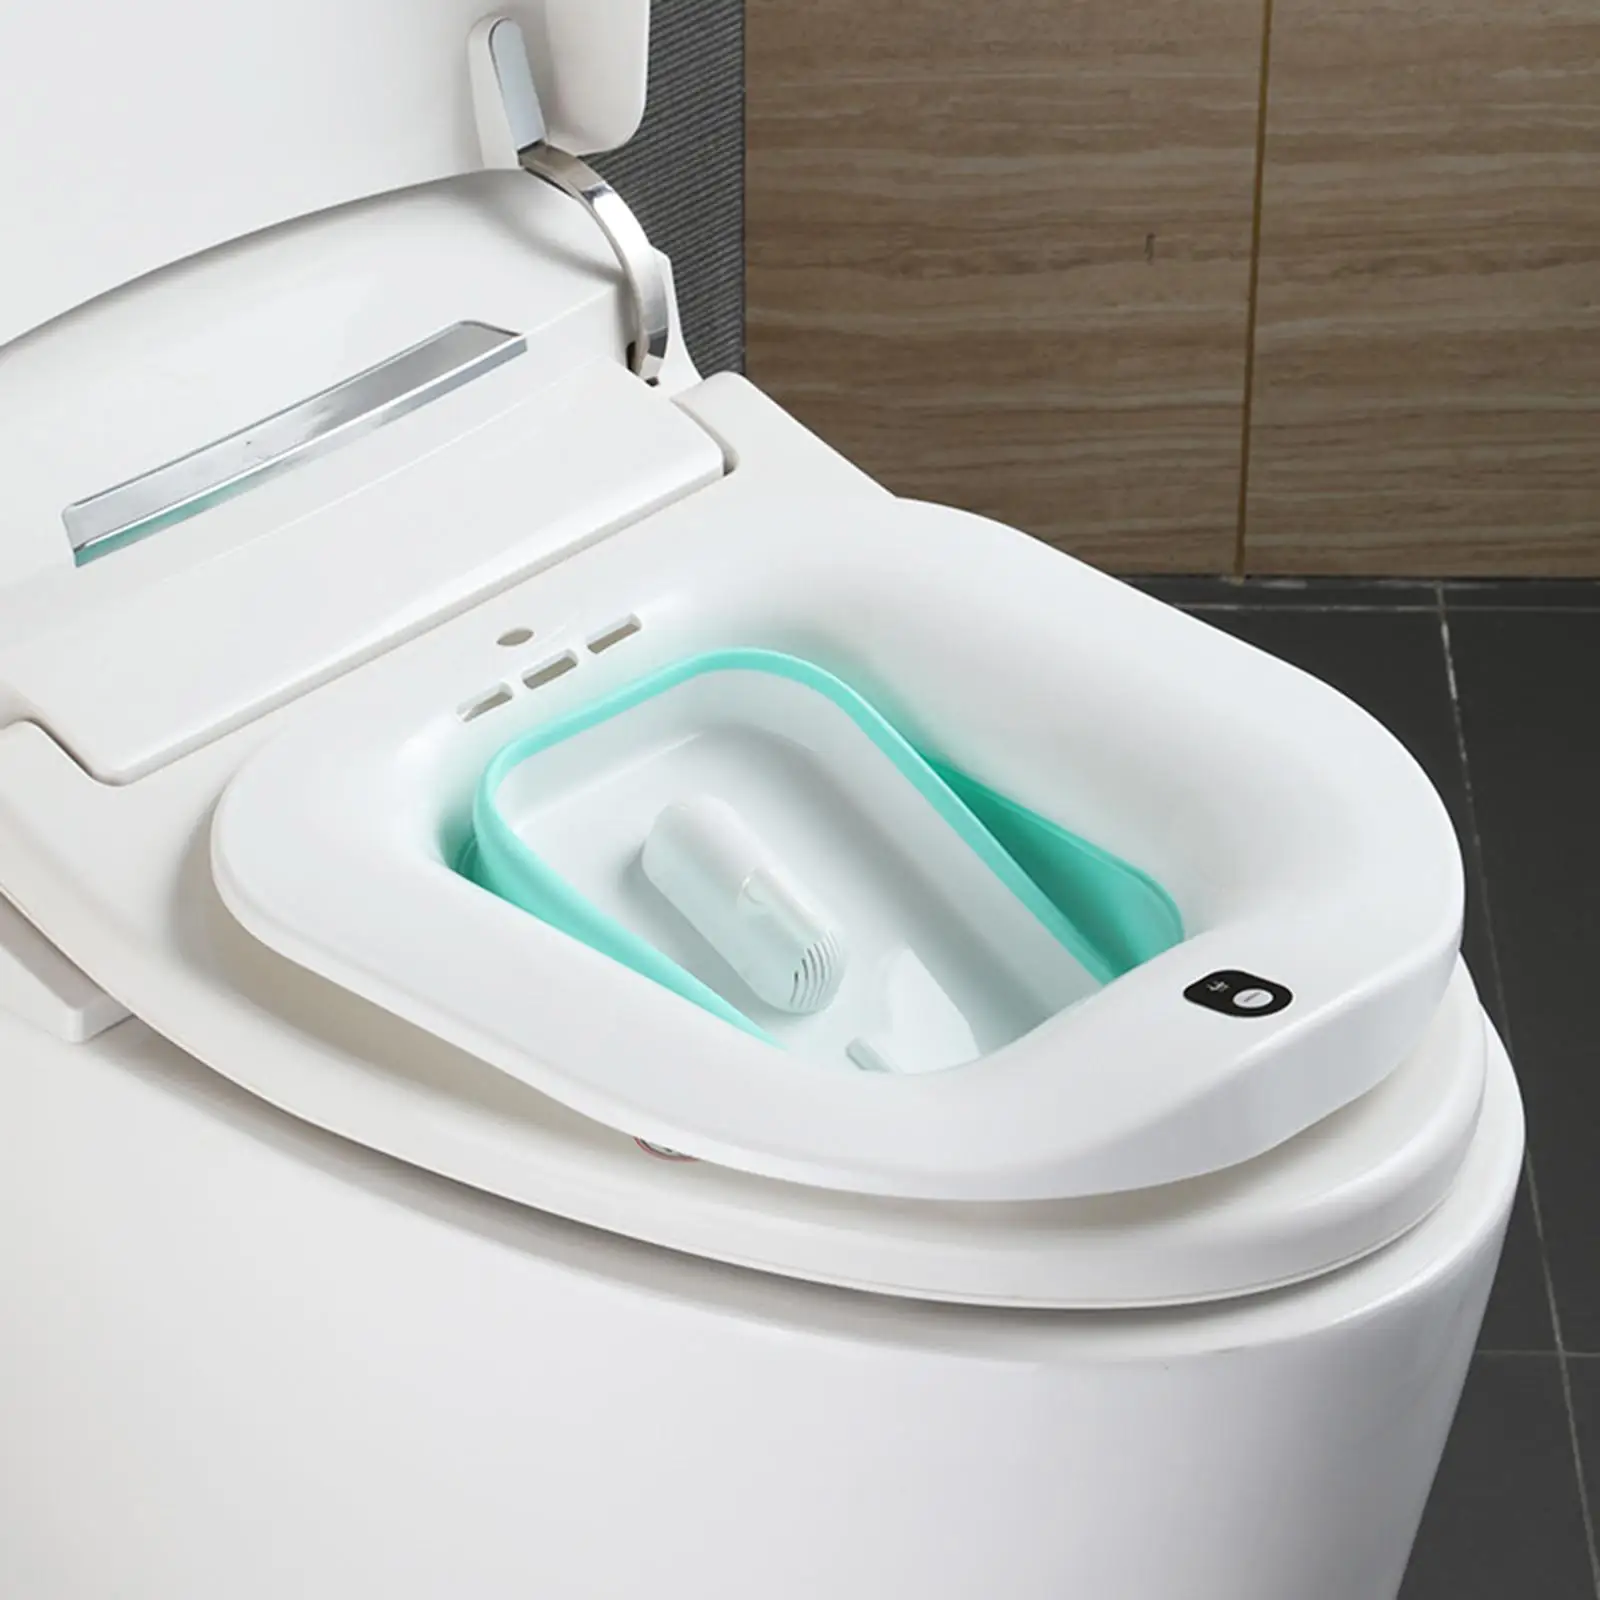 Electric Sitz Bath Tub Basin Bidet Bidet Water Spray for Cleanse Pregnancy Women Postpartum for Standard Toilets Hip Bath Tub